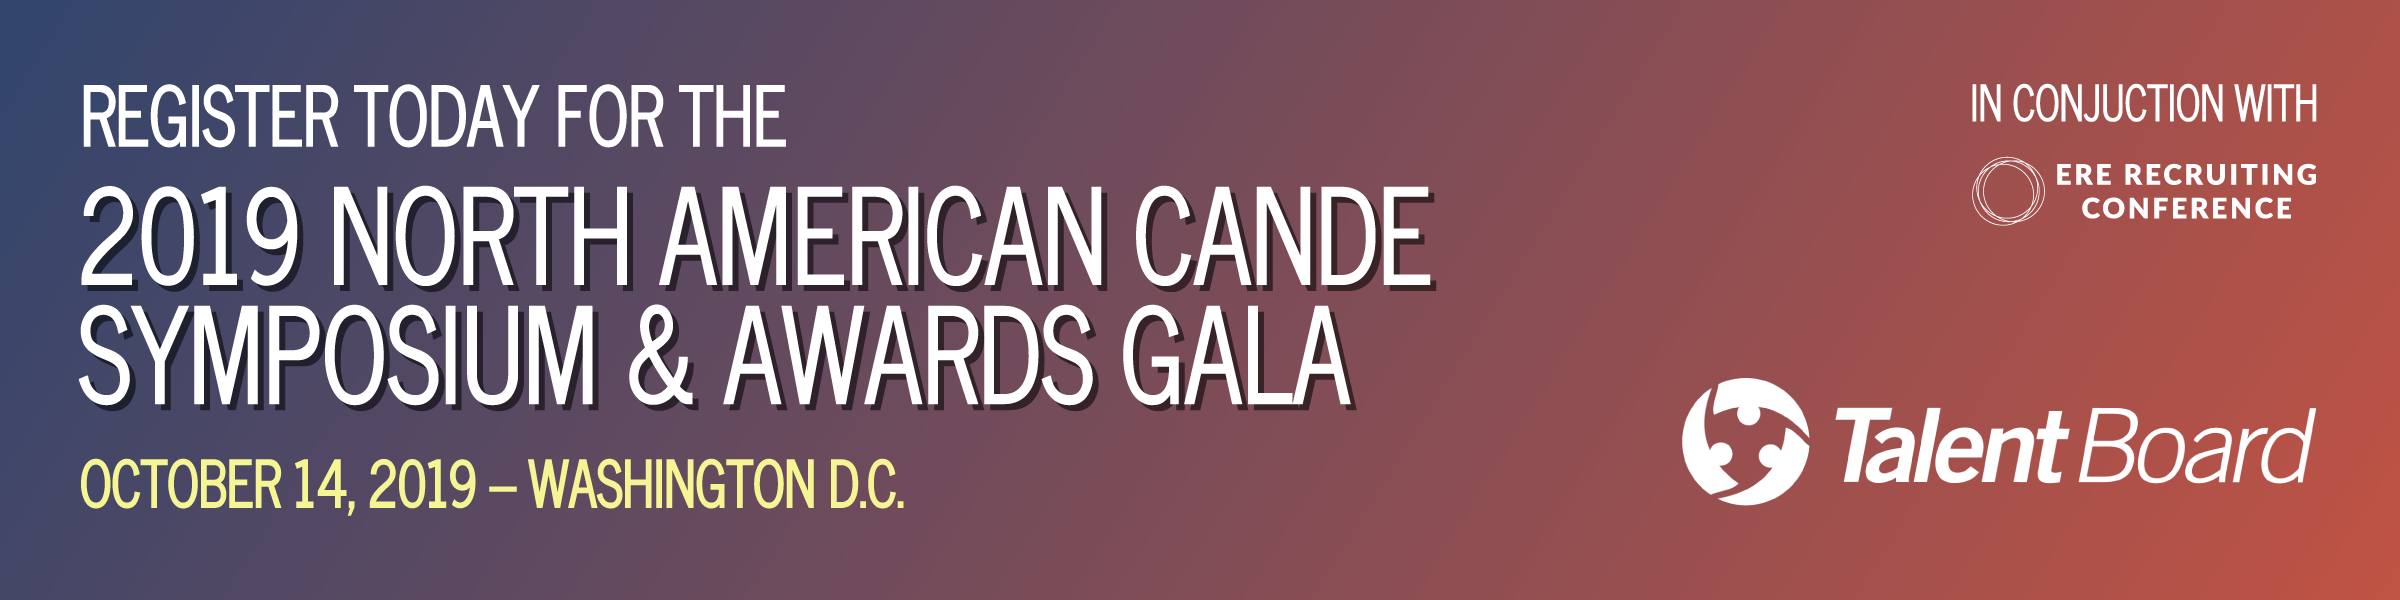 TalentBoard 2019 North American Cande Symposium & Awards Gala graphic